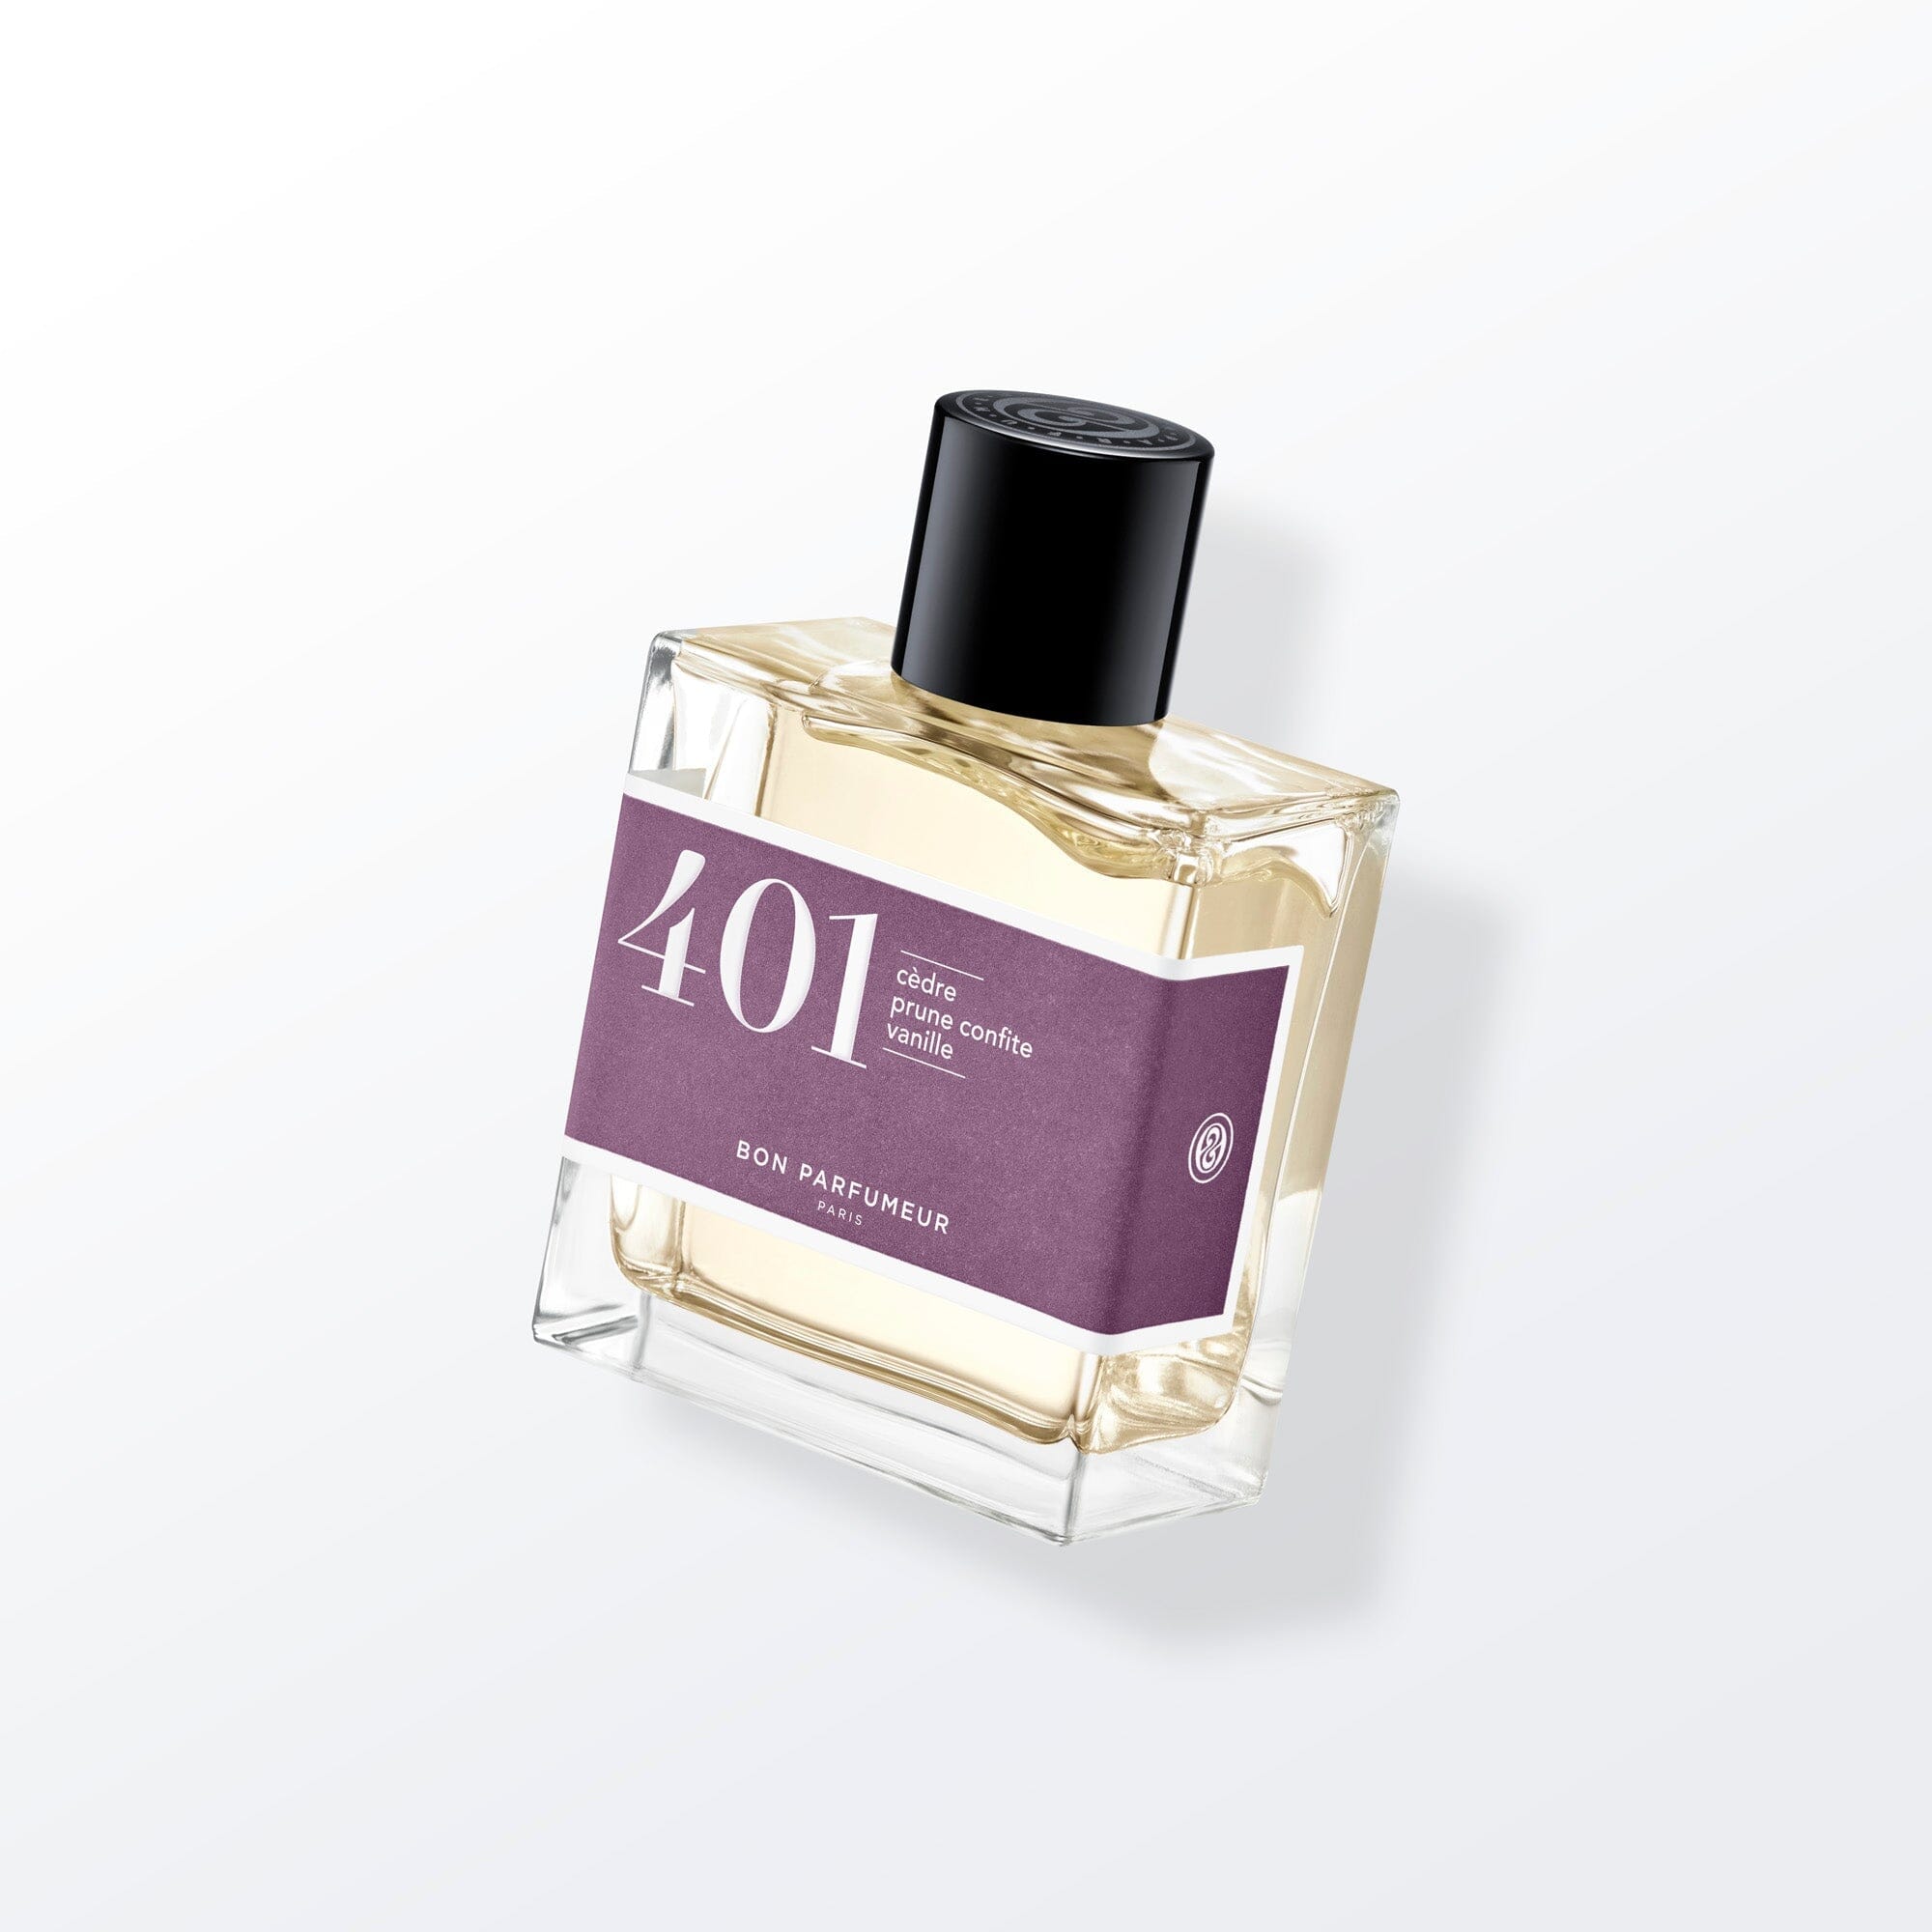 Eau de parfum 401 au cèdre, à la prune confite et à la vanille Eau de parfum Bon Parfumeur France 100ml+15ml (15ml -50%) 